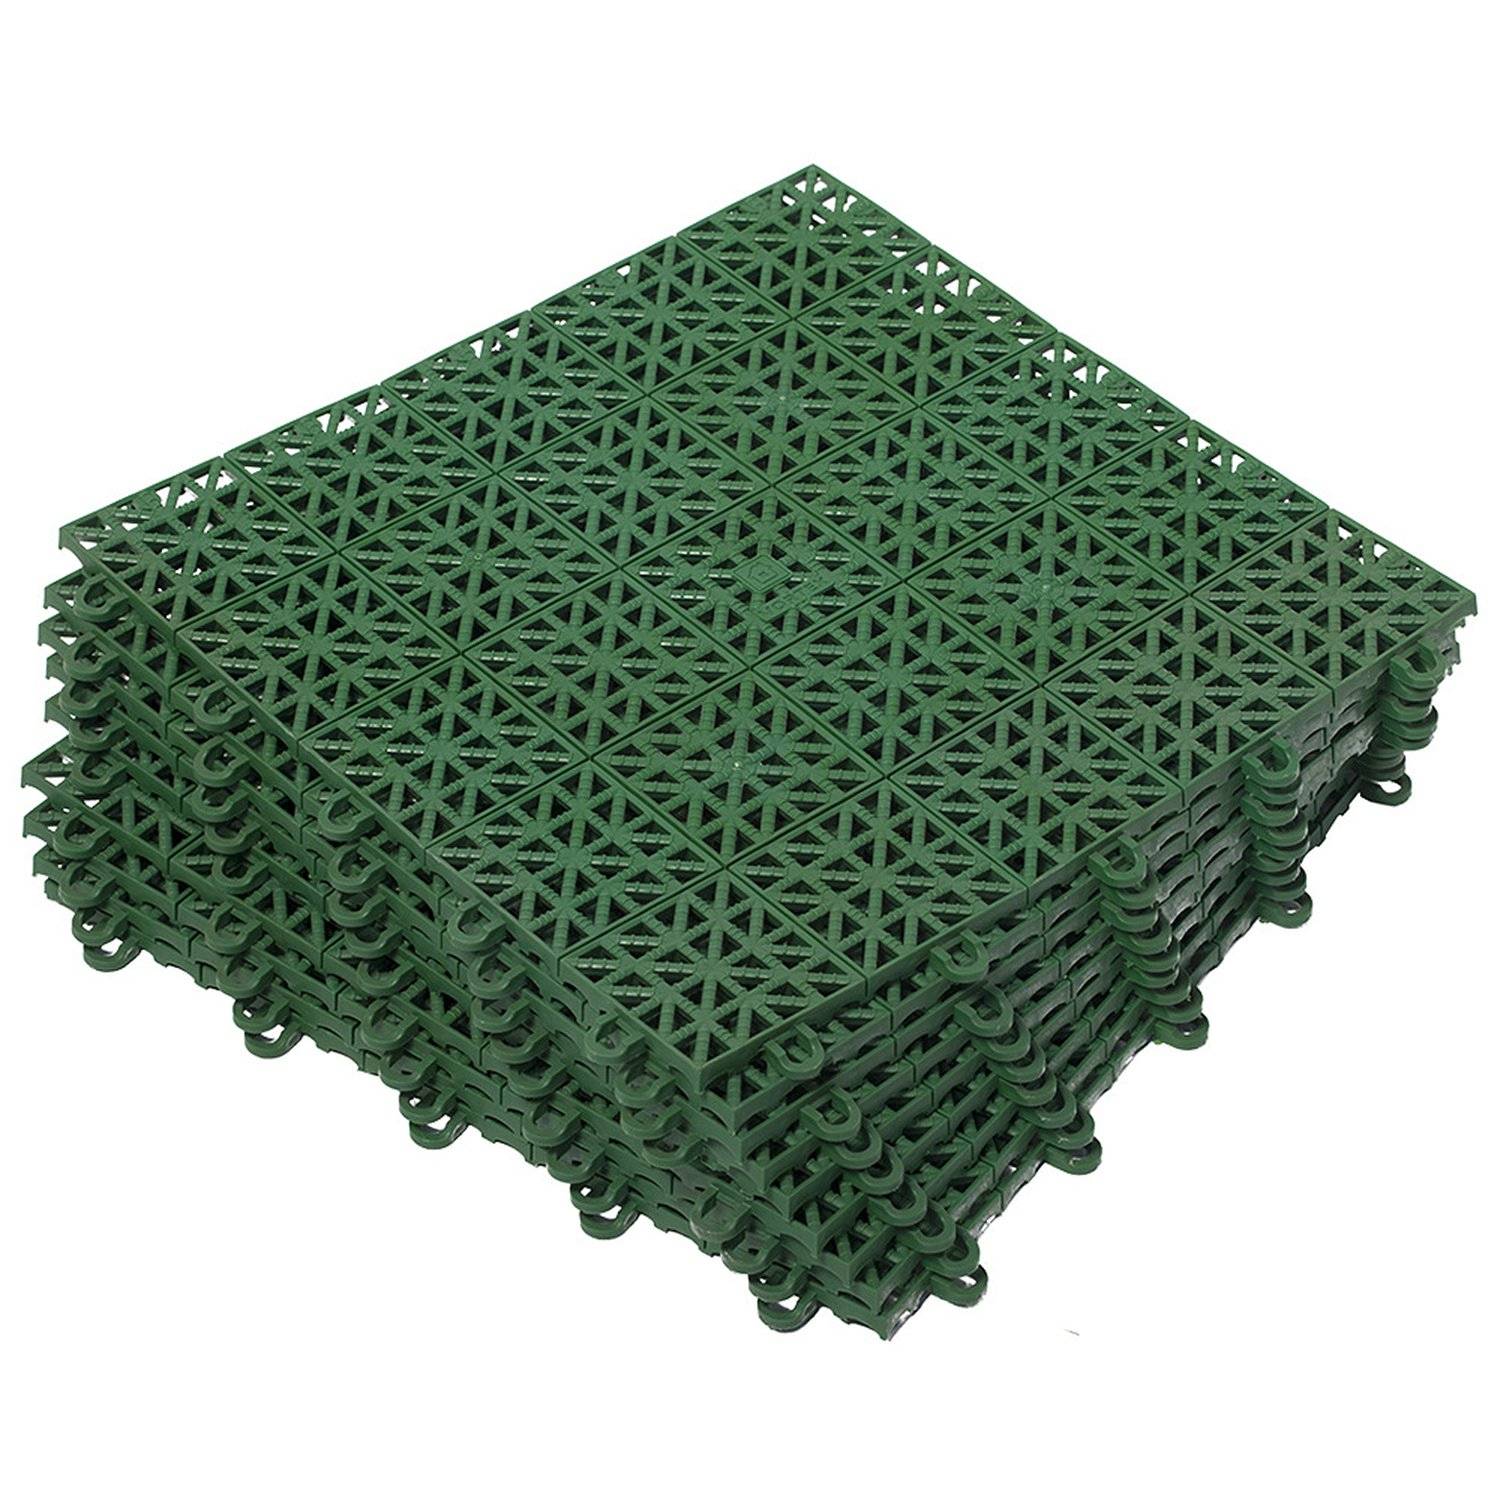 Купить пластиковое покрытие. Модульное покрытие Vortex. Покрытие пластиковое, универс. 1м.кв. (9 плиток) цвет зеленый Vortex, 5365. Покрытие модульное 330х330 (9шт) зеленый Vortex. Покрытие модульное Vortex 5365 33x33, зеленый.